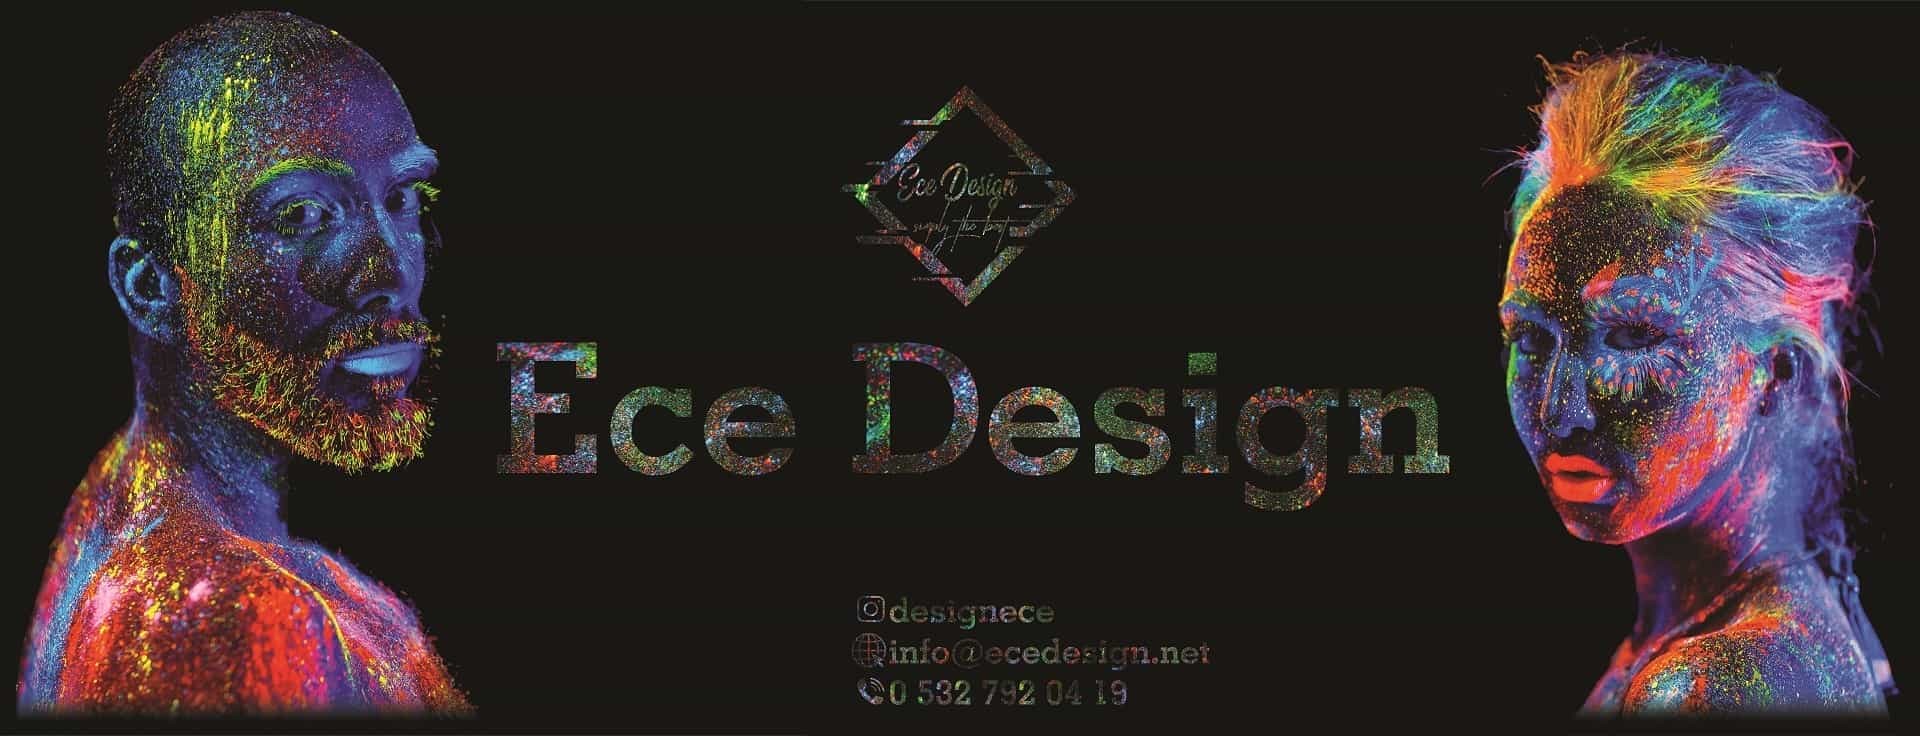 Ece Design 2